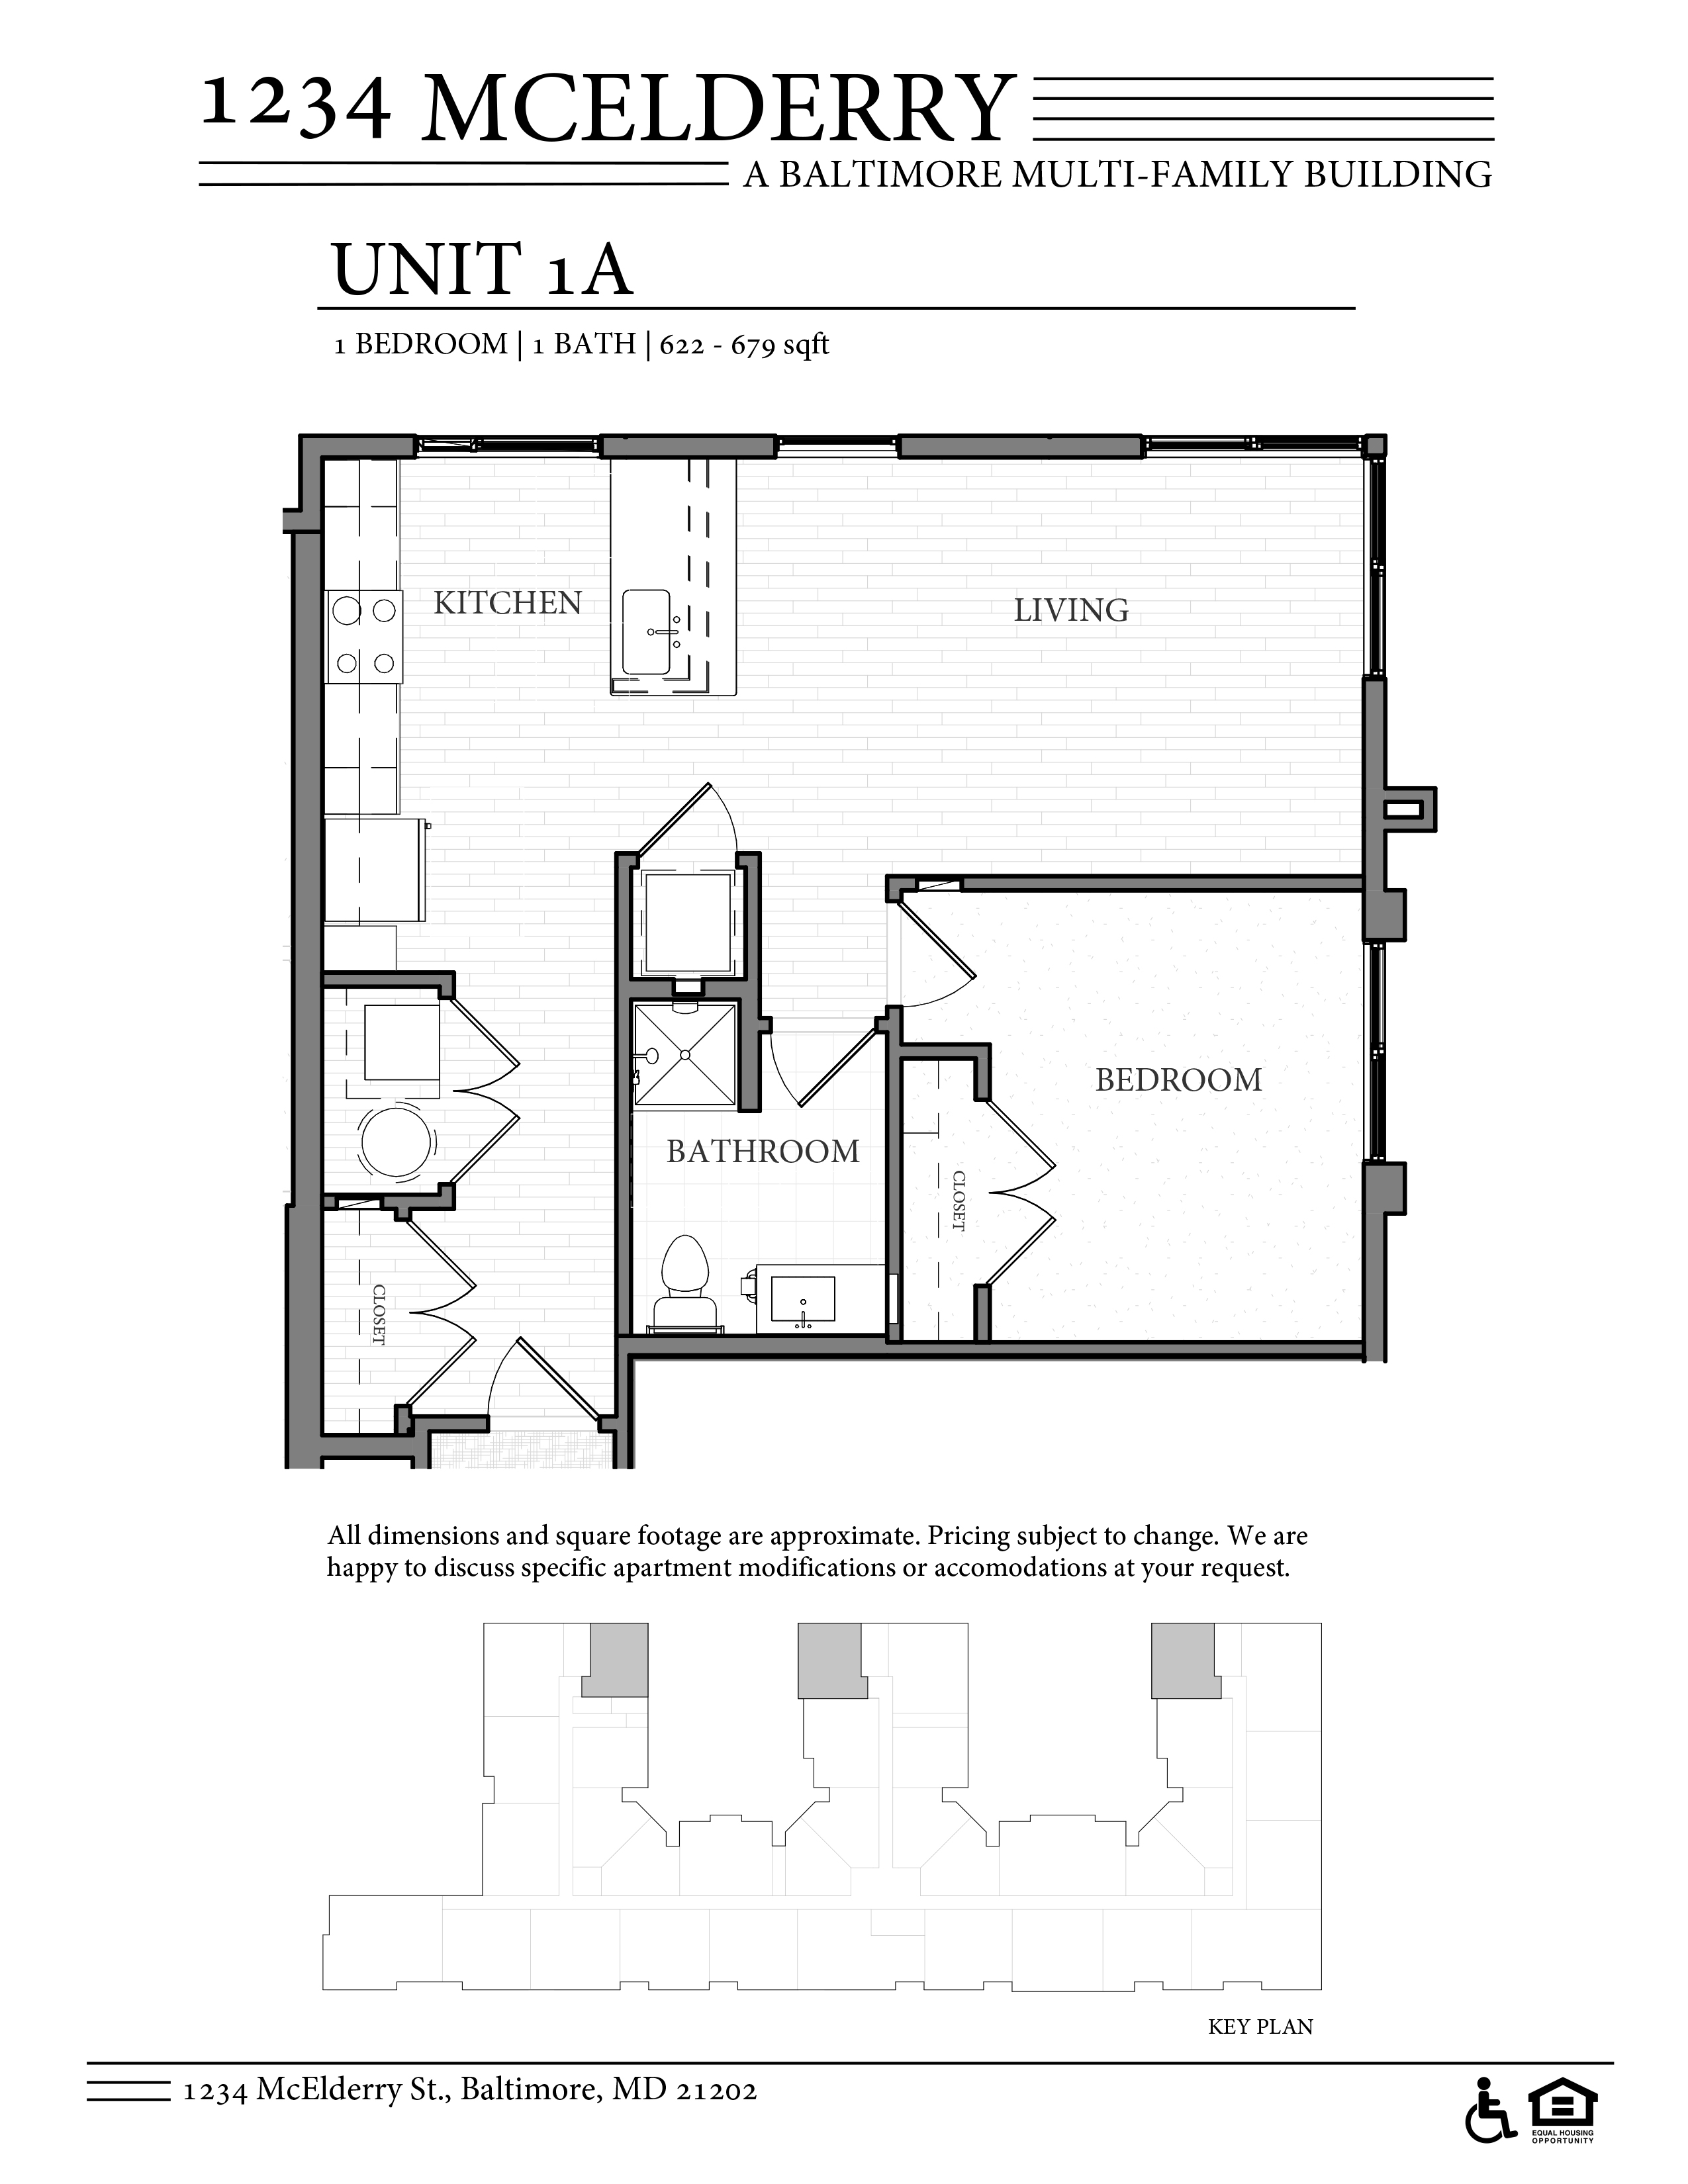 1234 McElderry Floor Plan 1 Bedroom Columbus Property